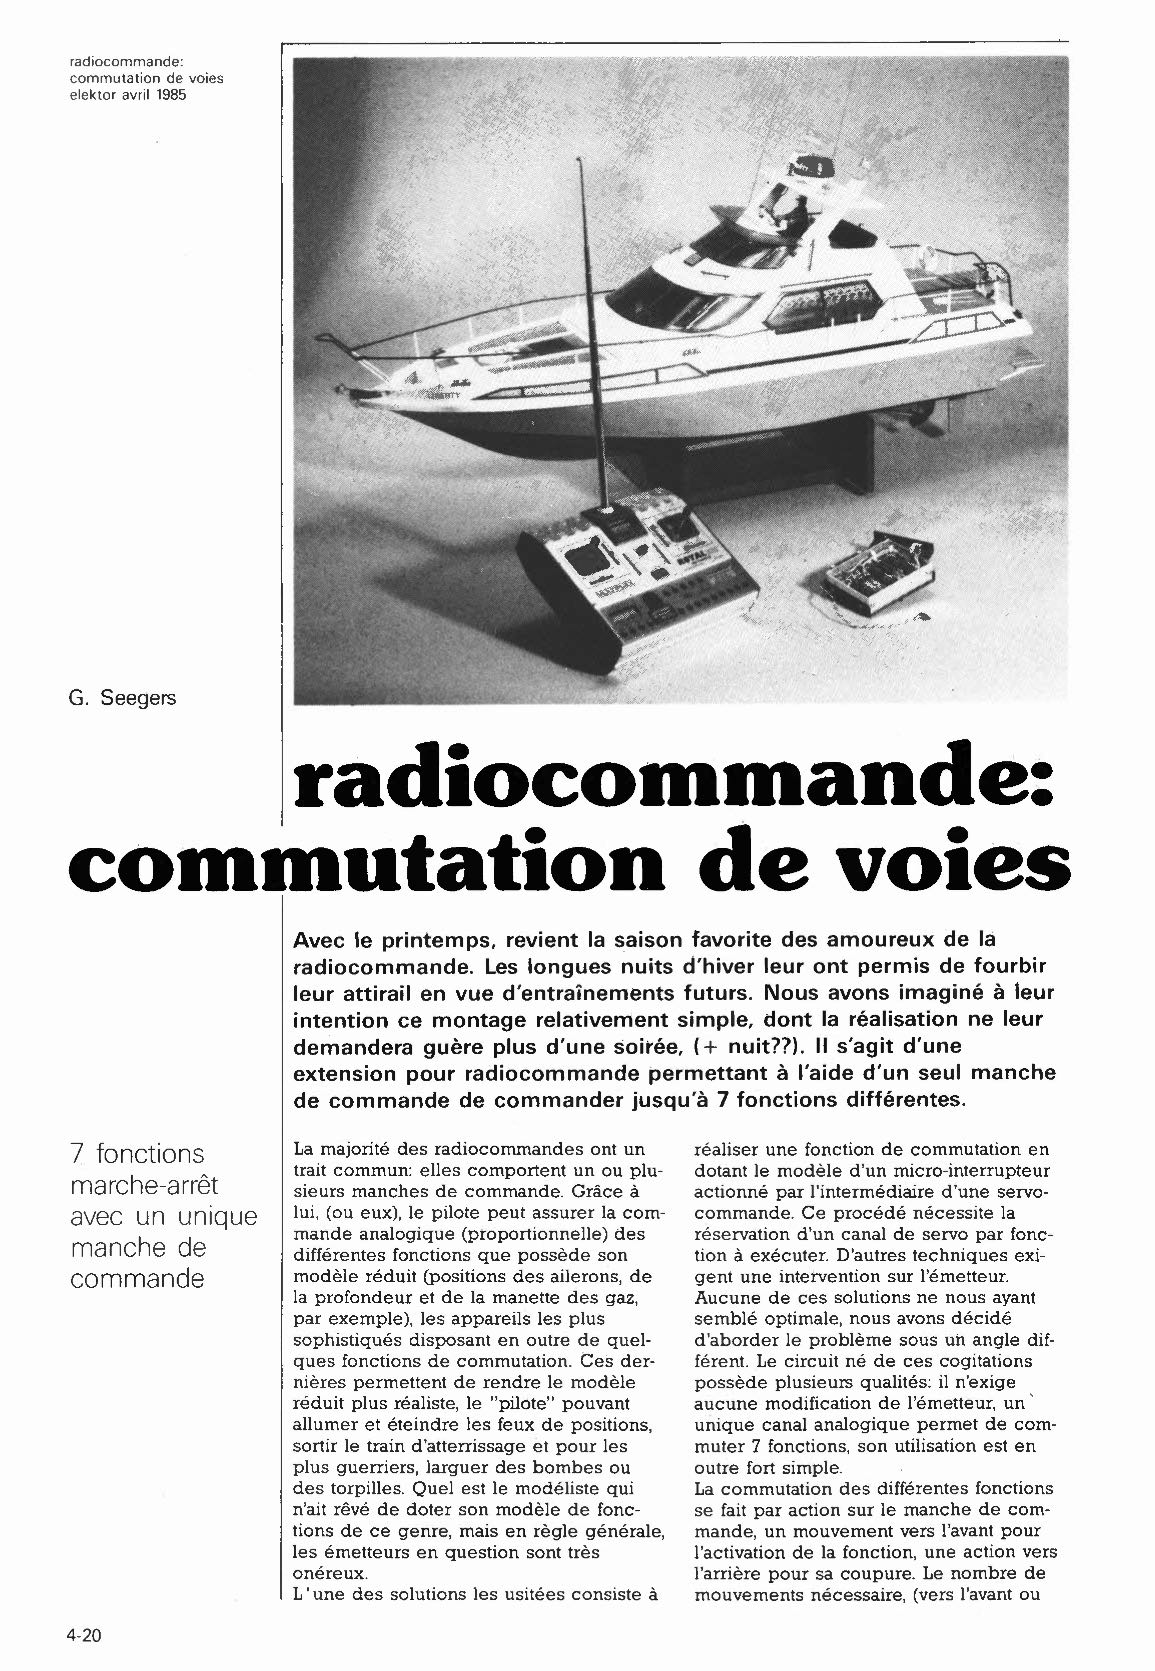 radiocommande: commutation de voies